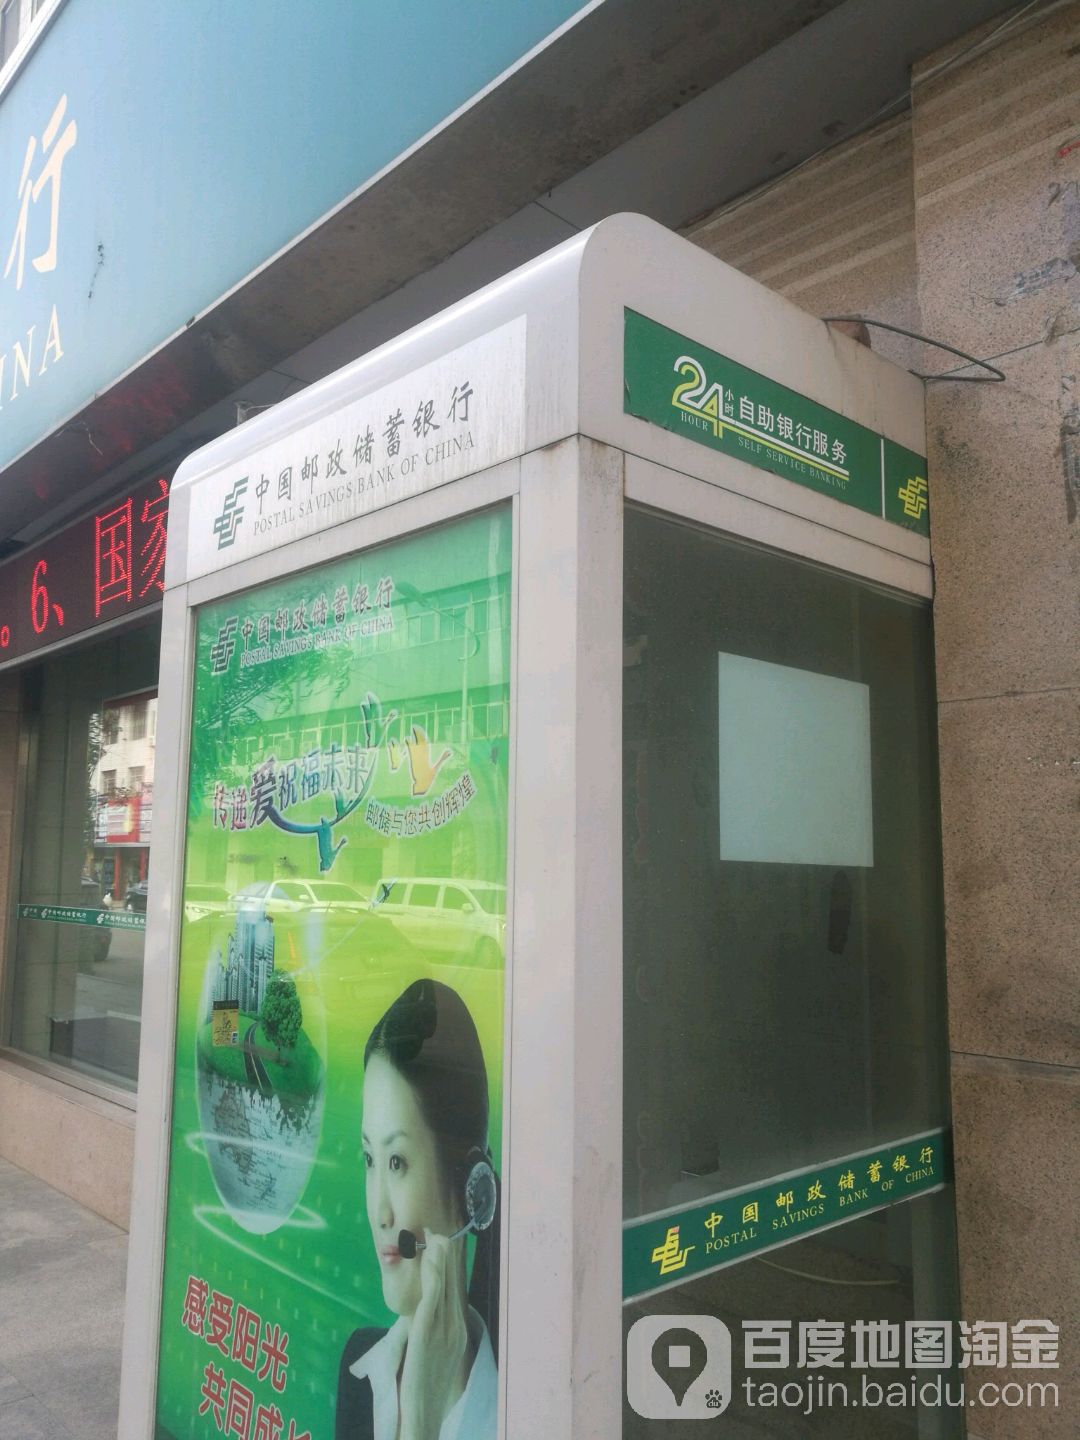 中國郵政儲蓄銀行24小時自助銀行(大柳塔支行)